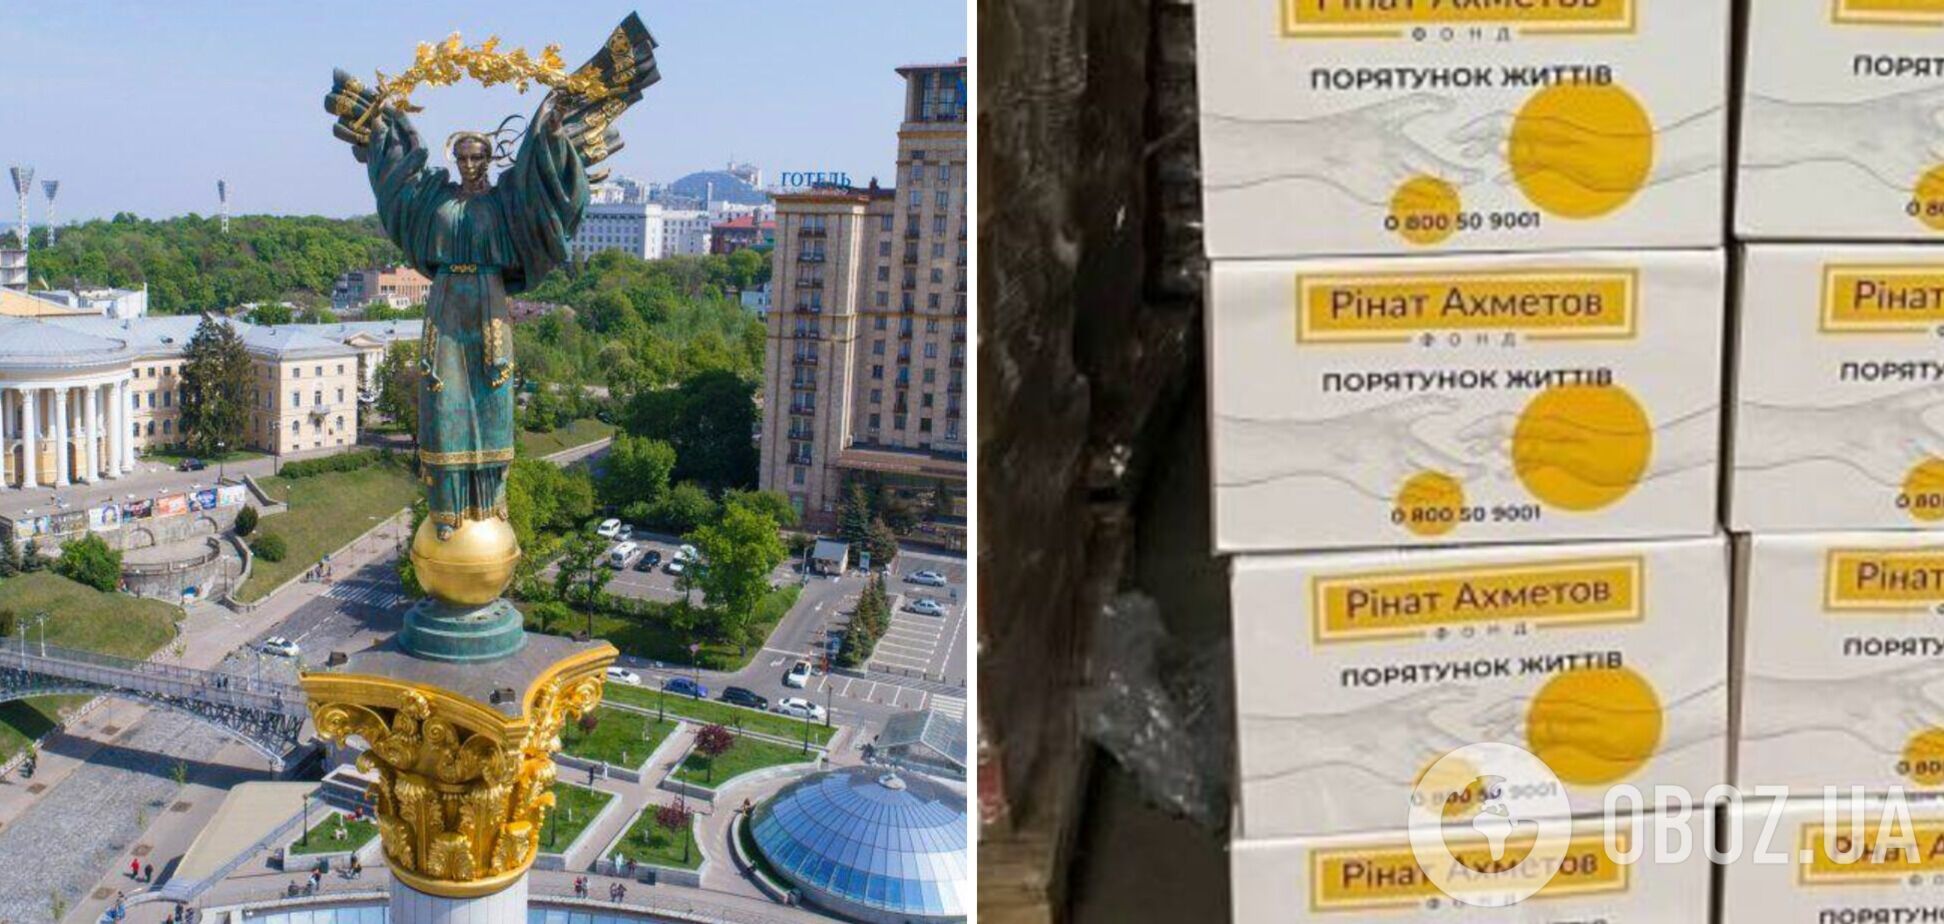 Ще одна партія продуктів вирушили до Києва, – Фонд Ріната Ахметова